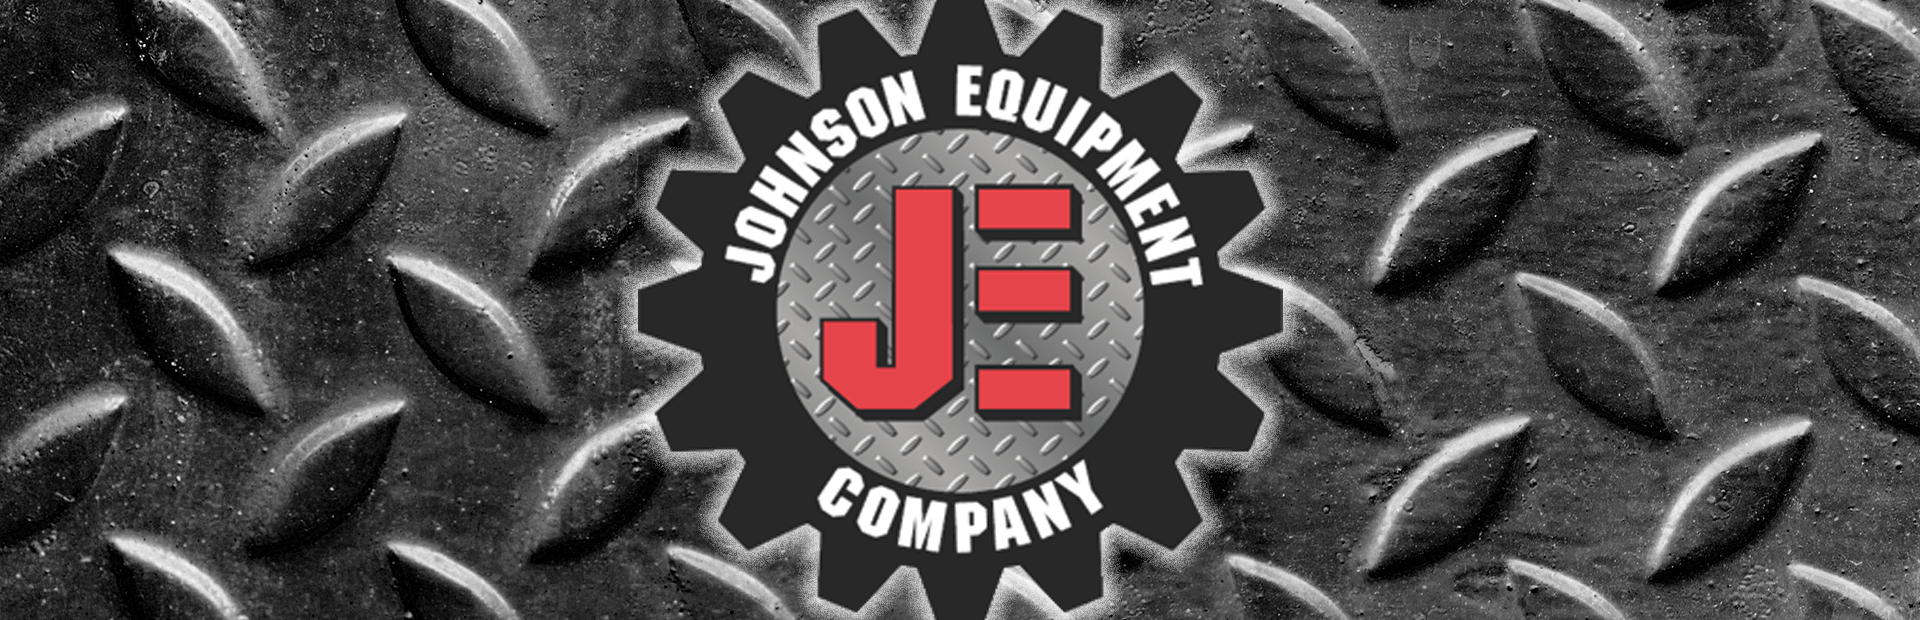 Johnson Equipment - Springdale, AR